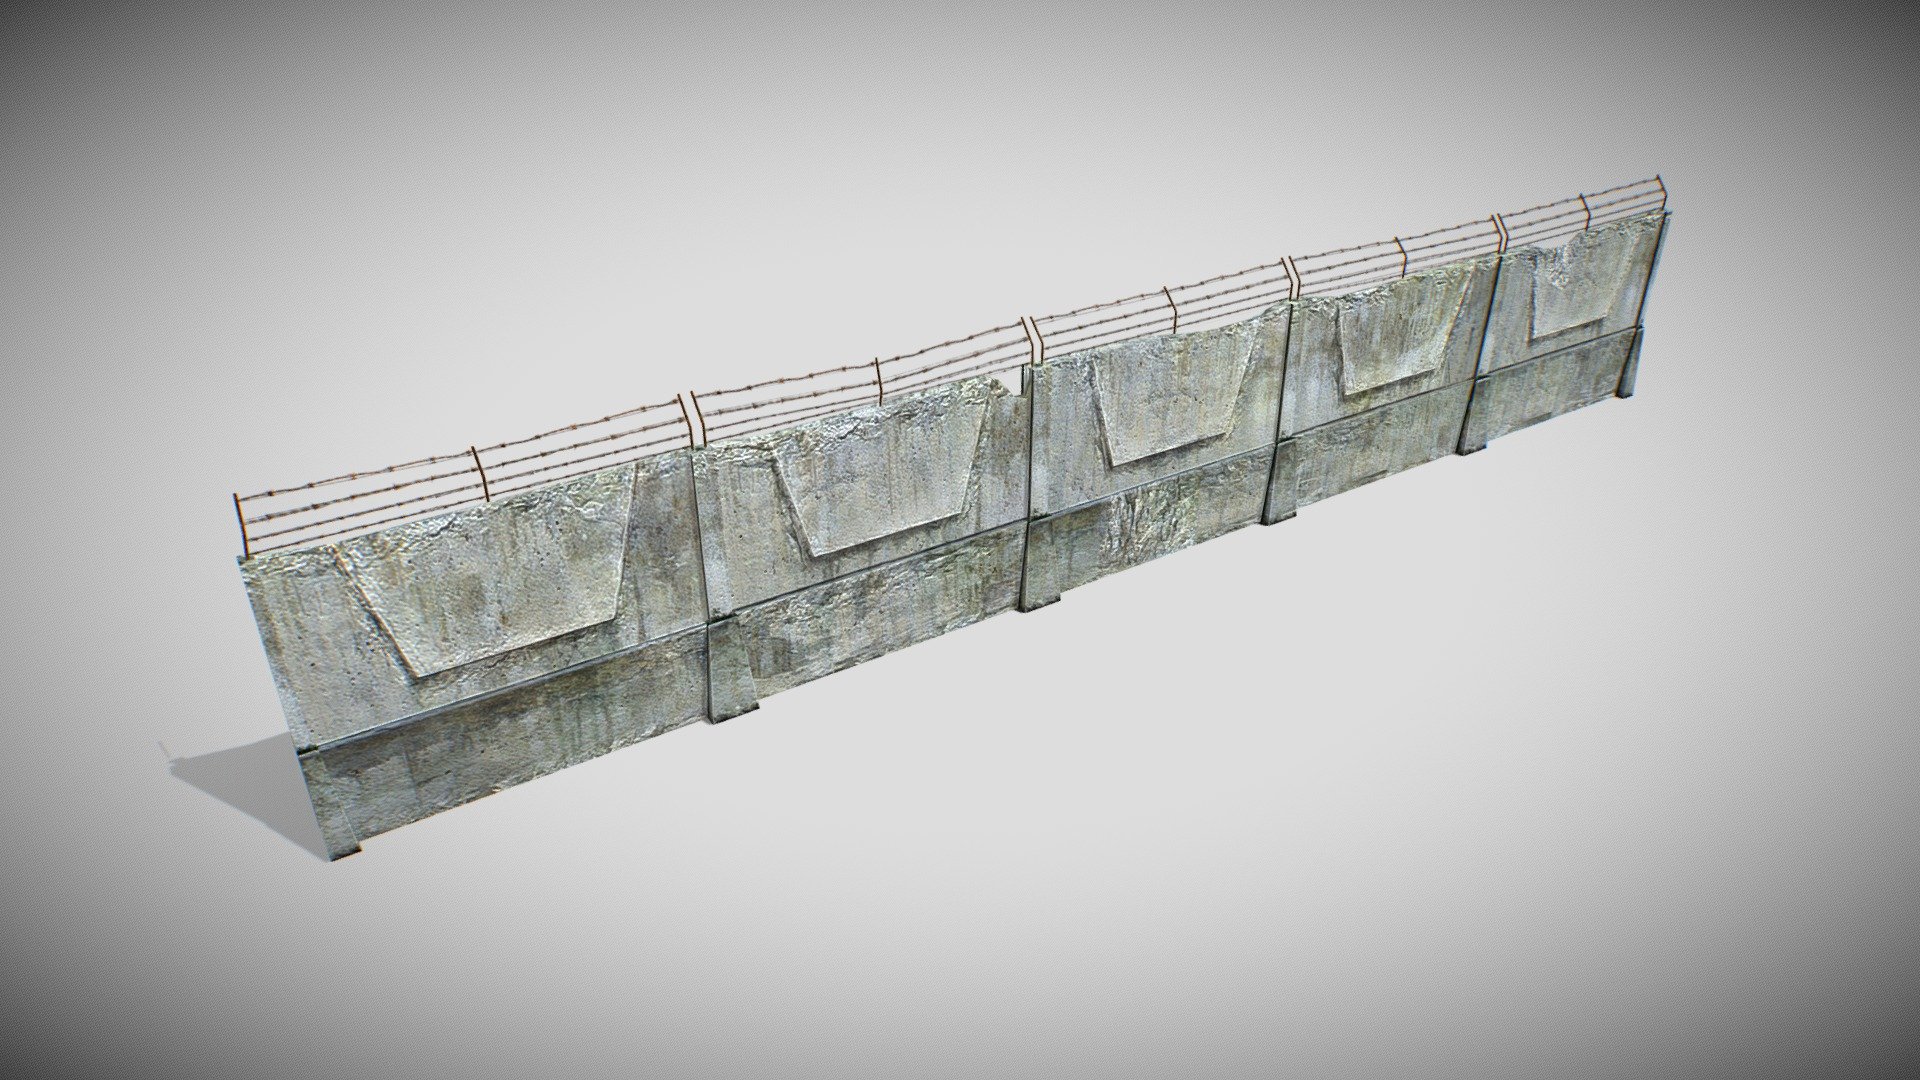 3d model of the fence - Fence - 3D model by djkorg 3d model